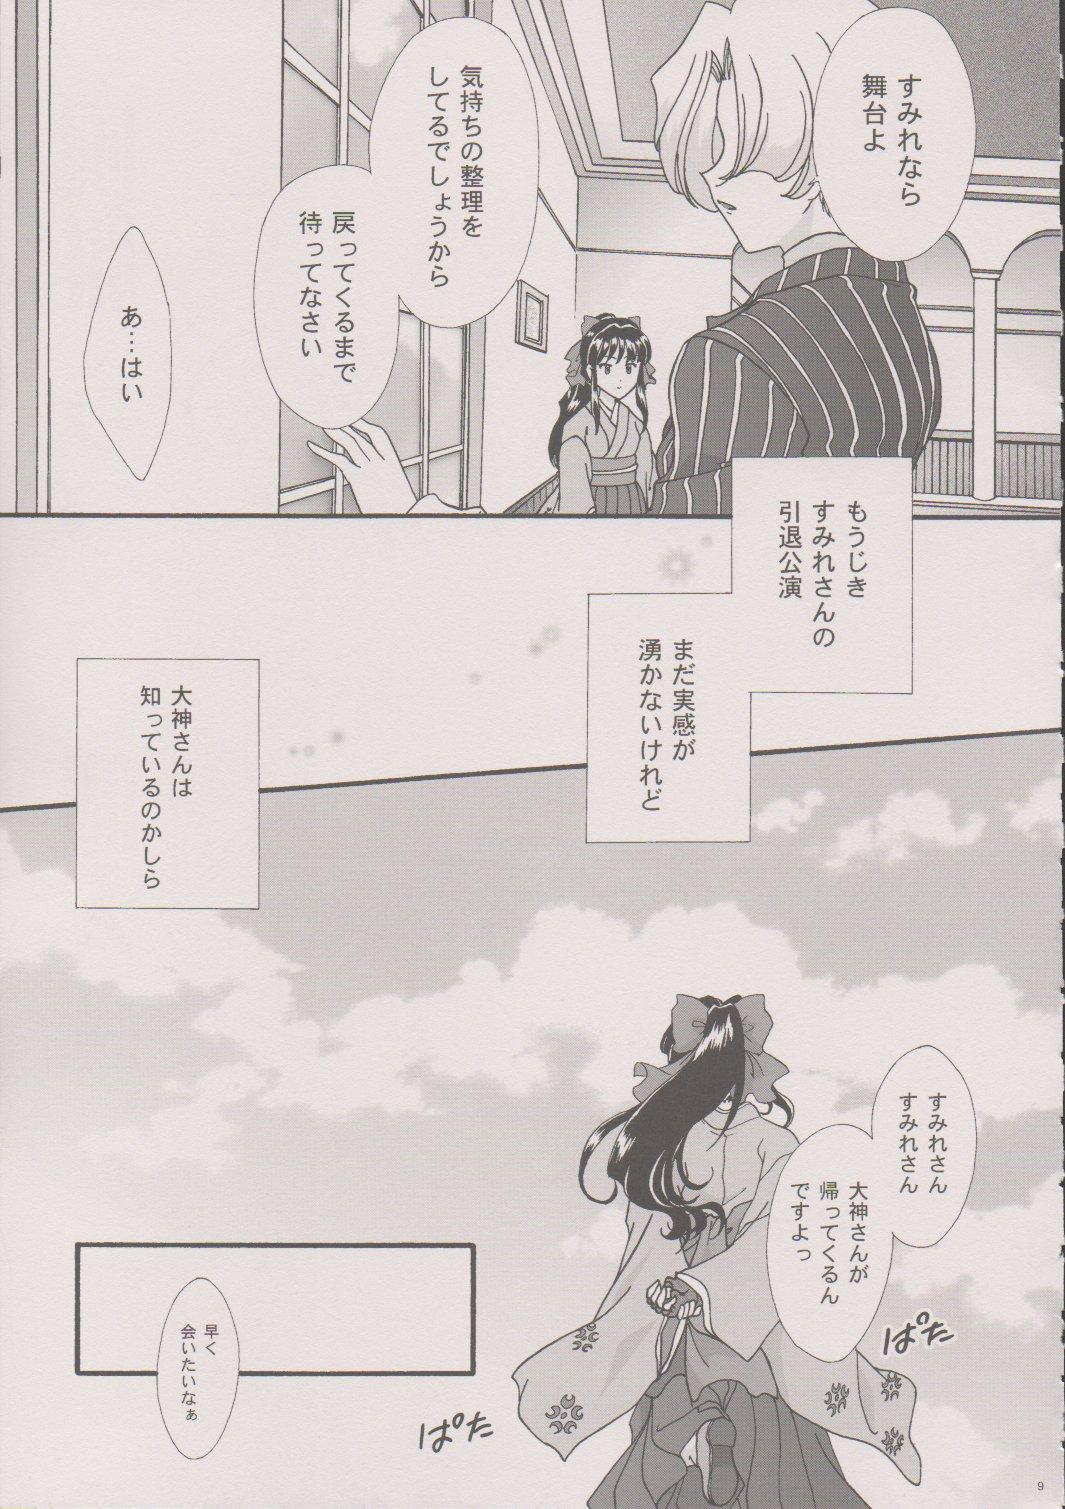 Beach [TSK (Fuuga Utsura)] Maihime ~Karen~ 6 Teito Yori. (Sakura Wars) - Sakura taisen Suruba - Page 8